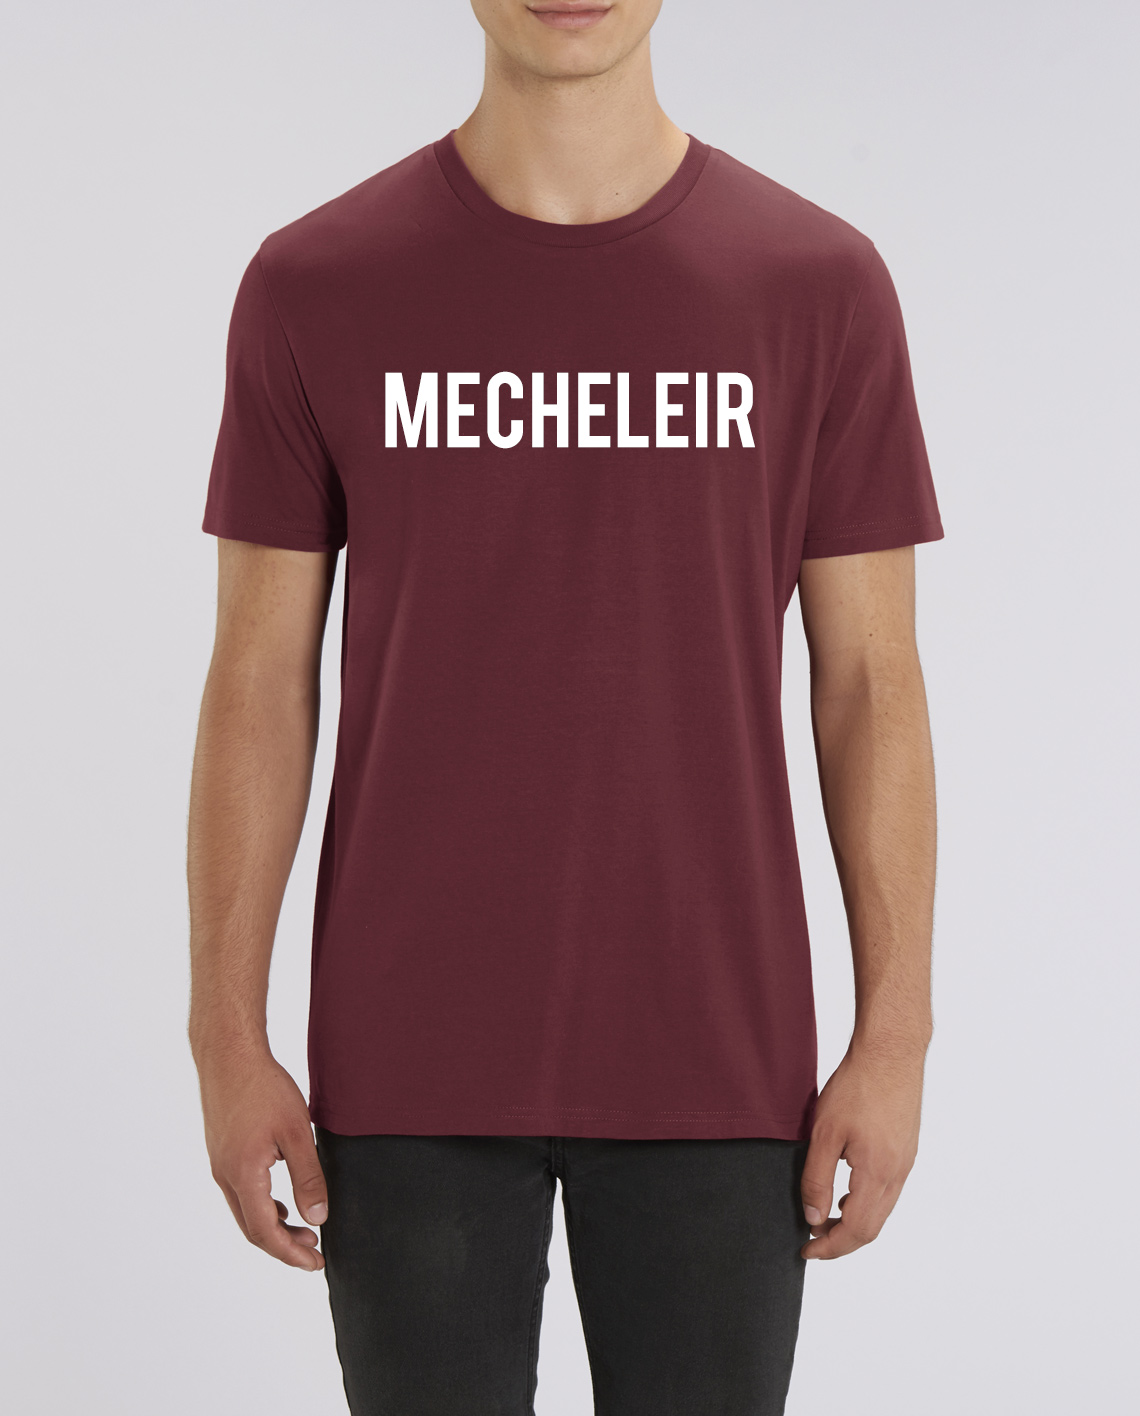 pijp oplichterij Nominaal T-Shirt Mecheleir online kopen bij Intdialect - Intdialect >>